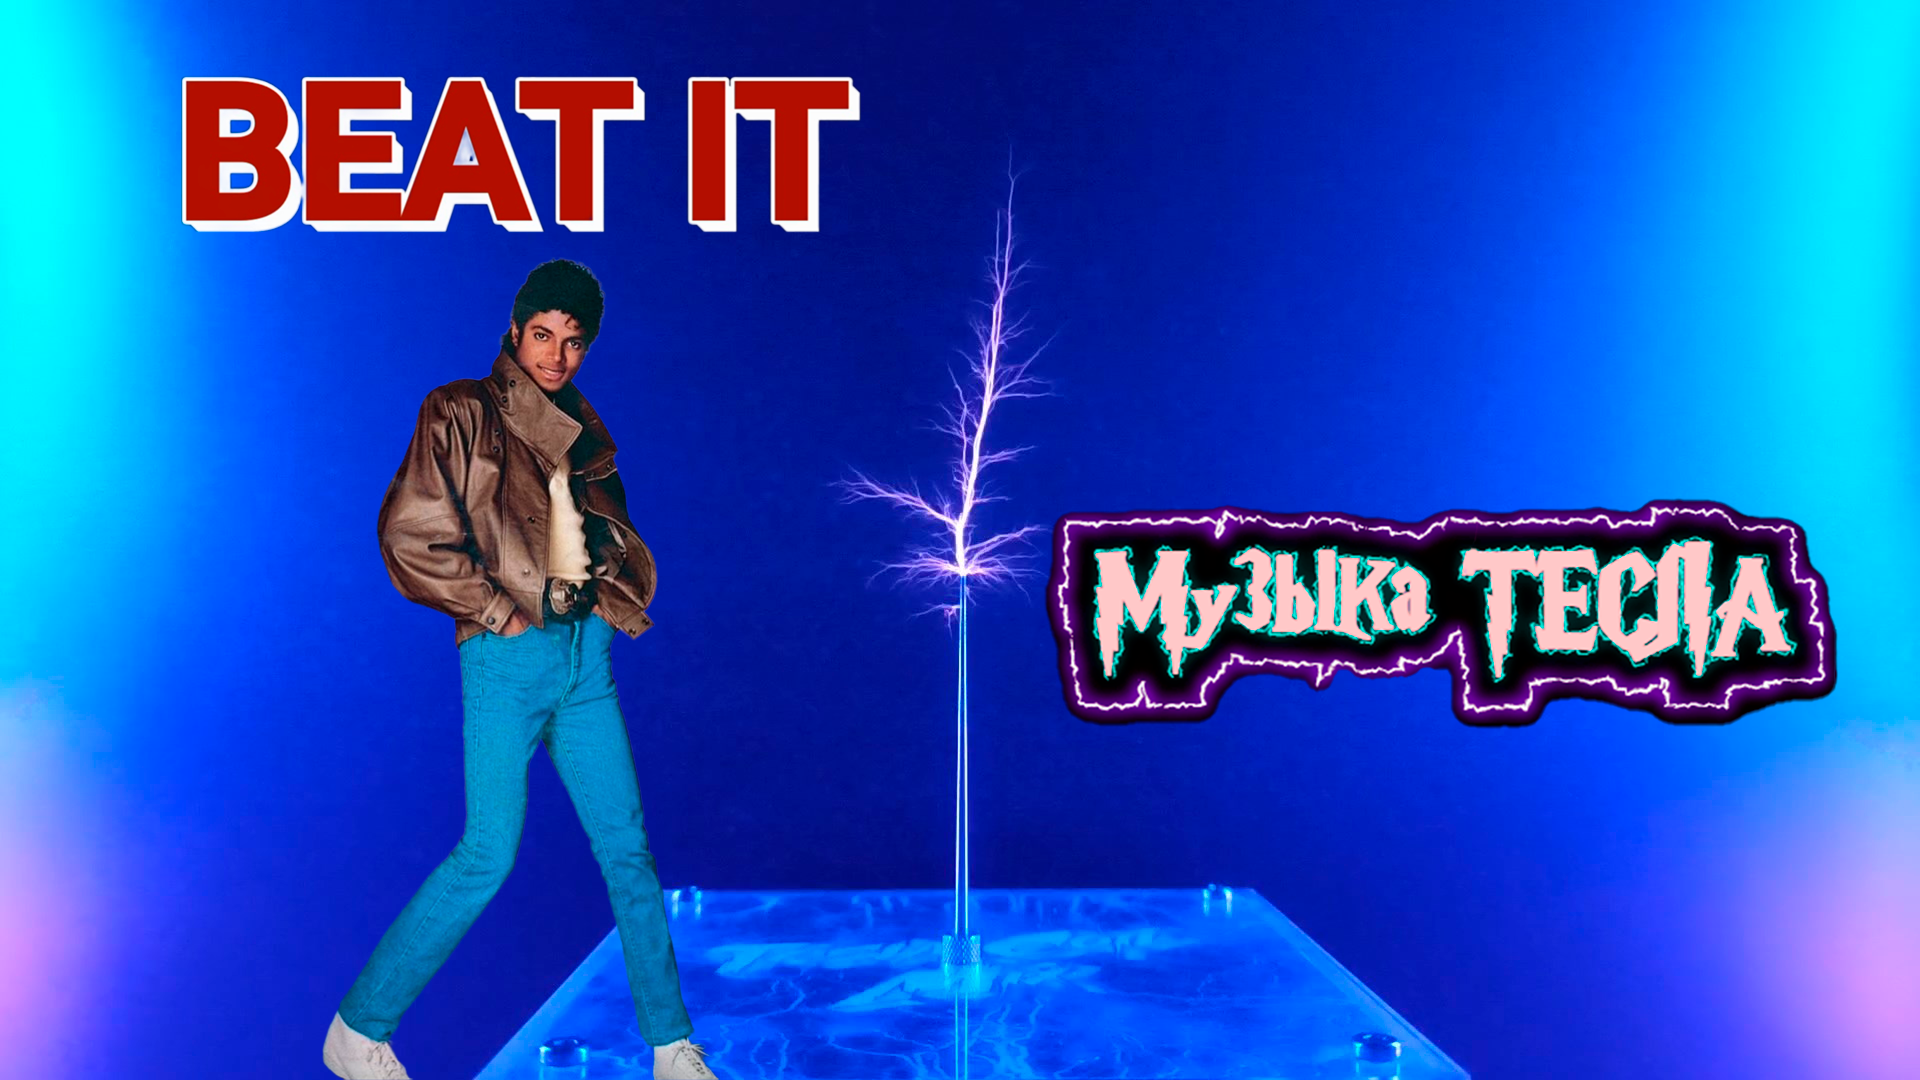 Michael Jackson - Beat It Tesla Coil Mix #музыкатесла